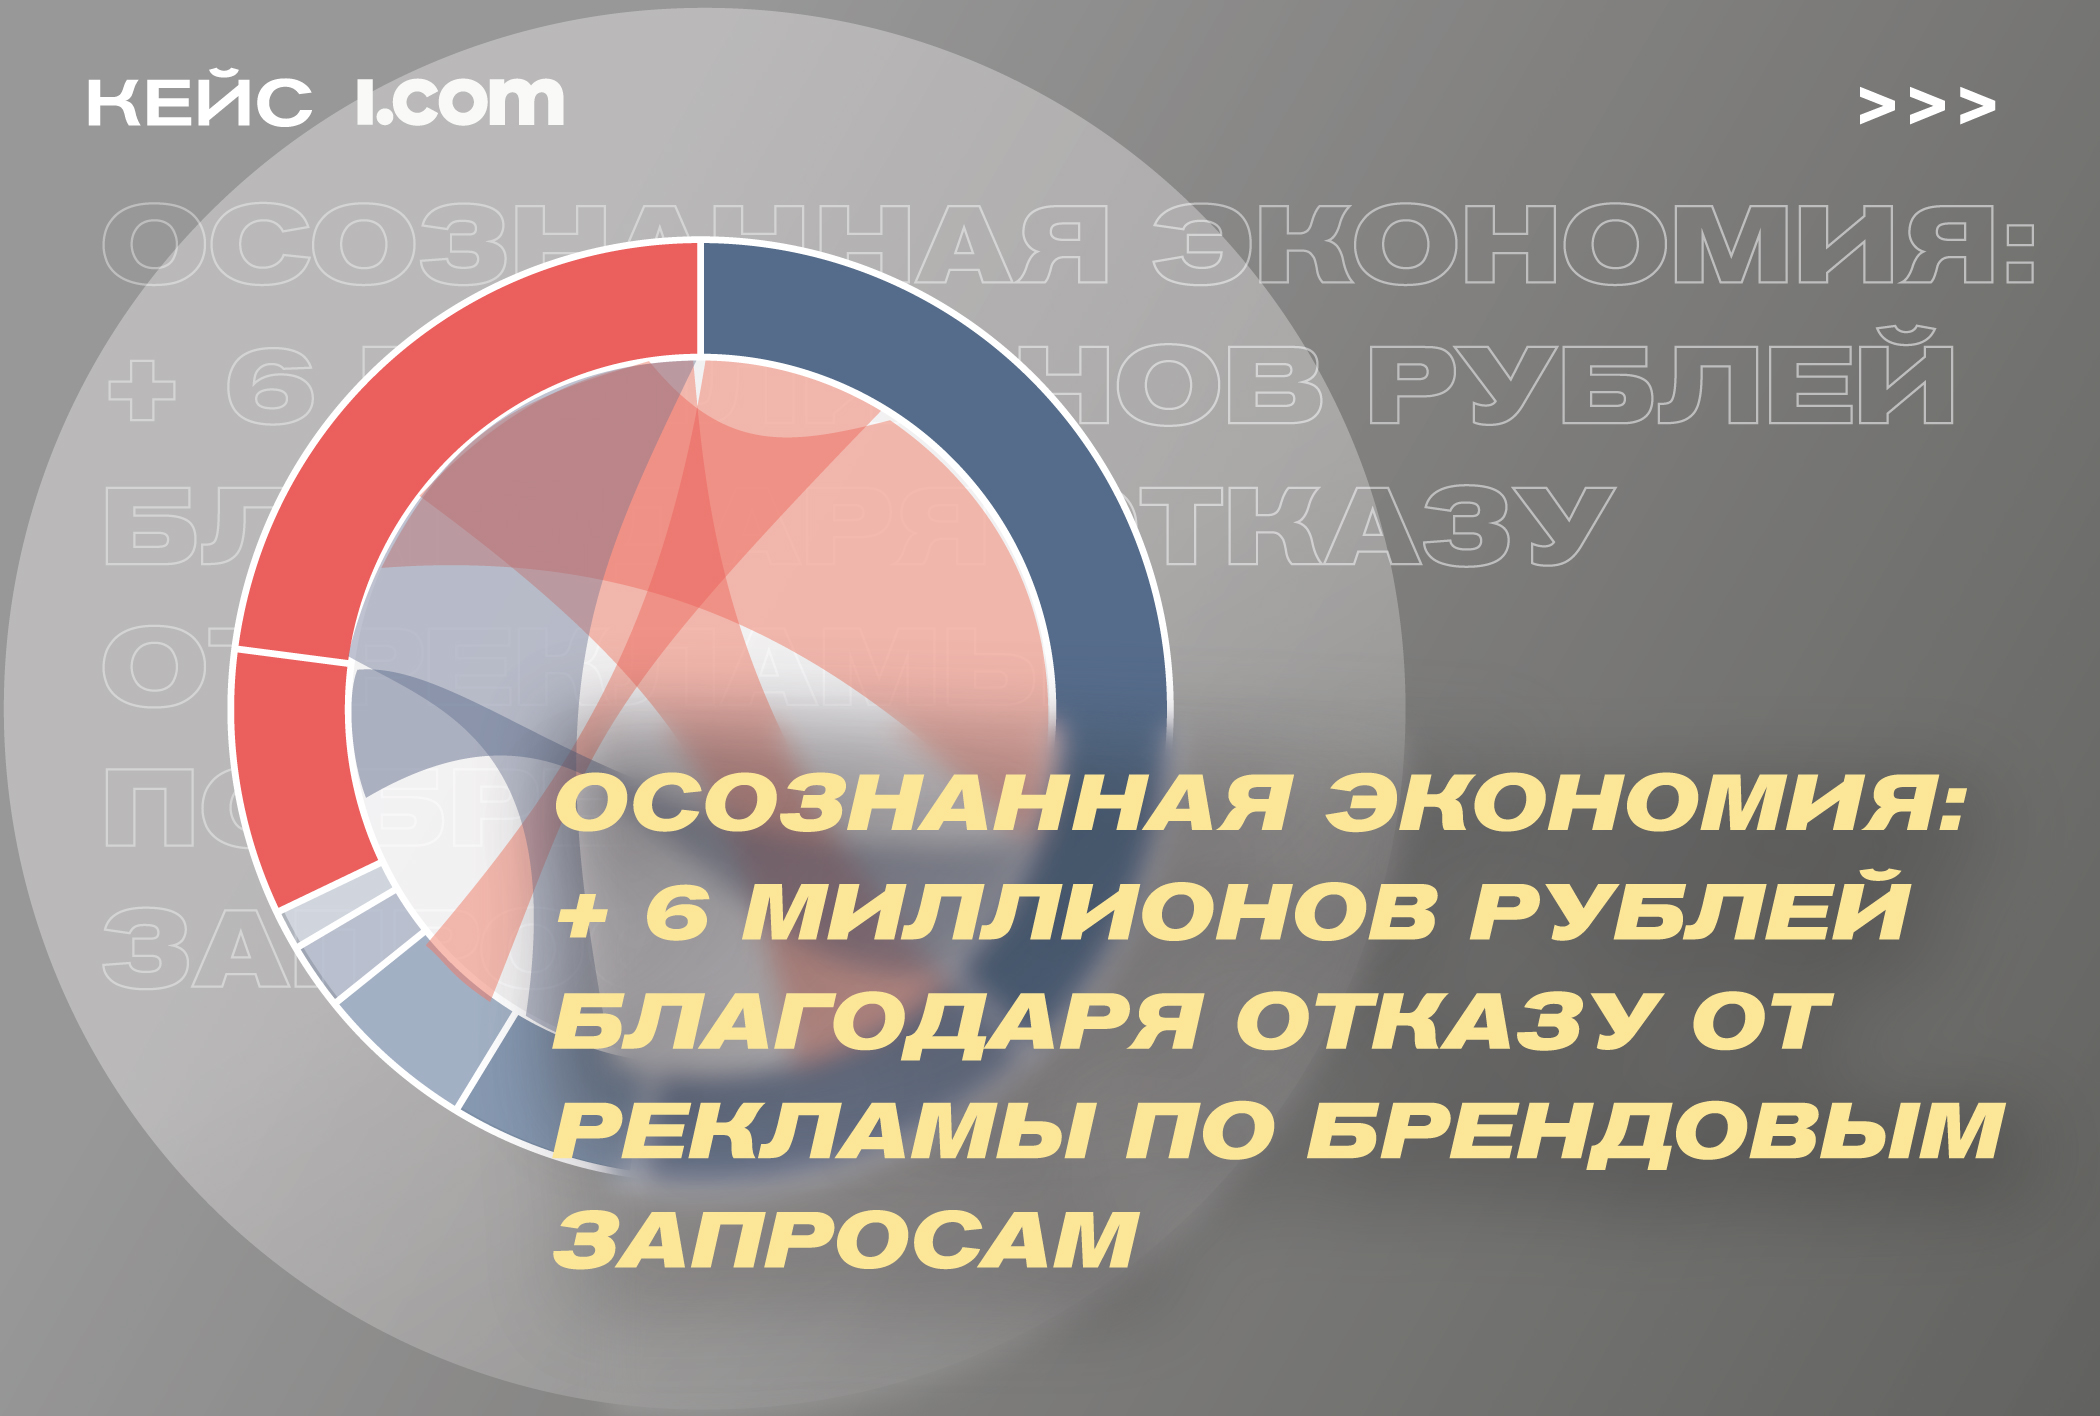 Кейс i.com: +6 миллионов рублей благодаря отказу от рекламы по брендовым запросам в фарме